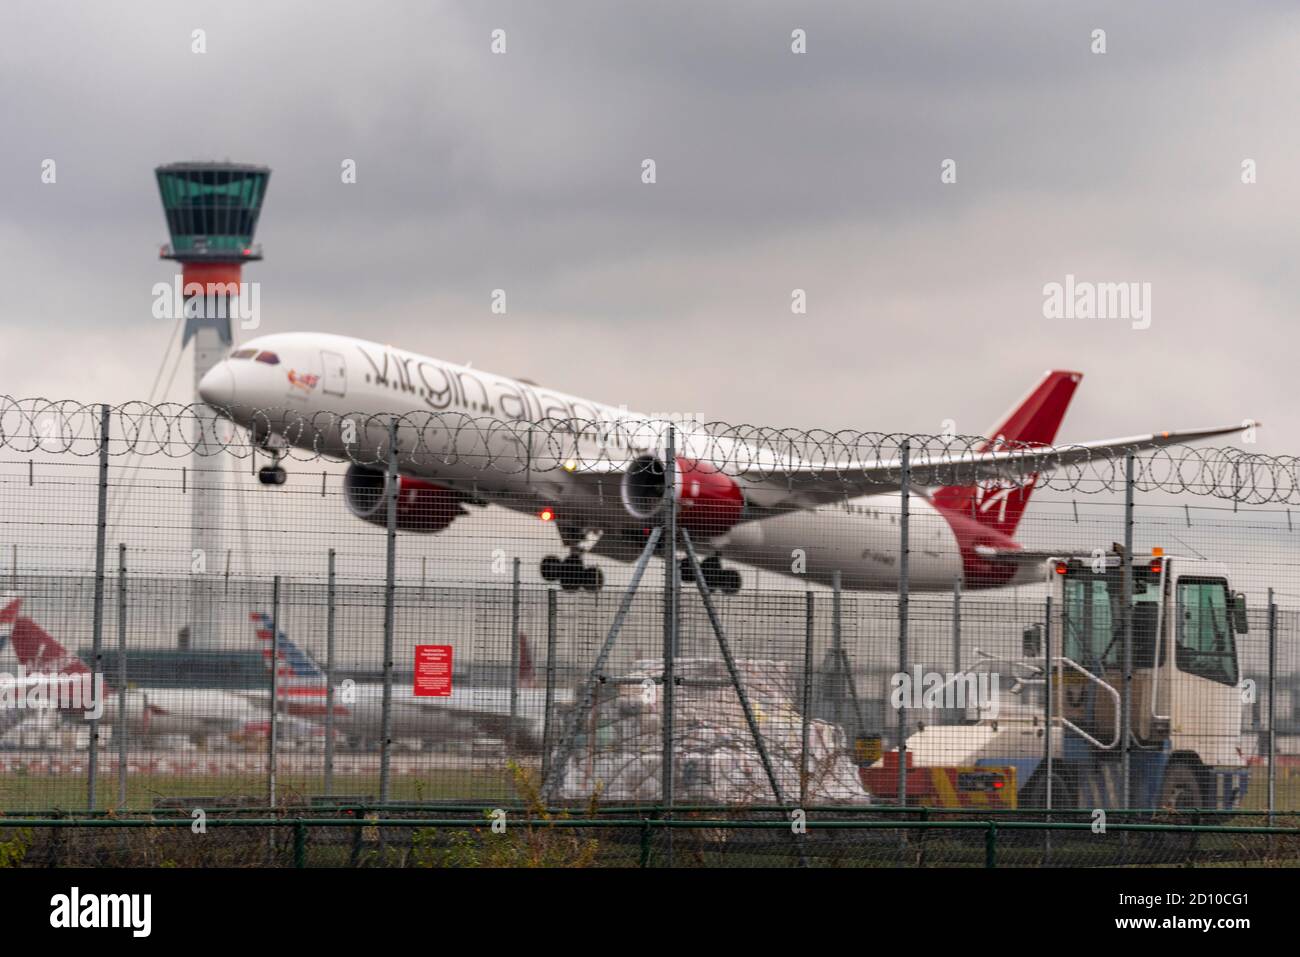 El avión de avión de avión Virgin Atlantic despegó con mal tiempo desde el aeropuerto de Heathrow, en Londres, Reino Unido, detrás de la valla de seguridad perimetral. Control del tráfico aéreo Foto de stock